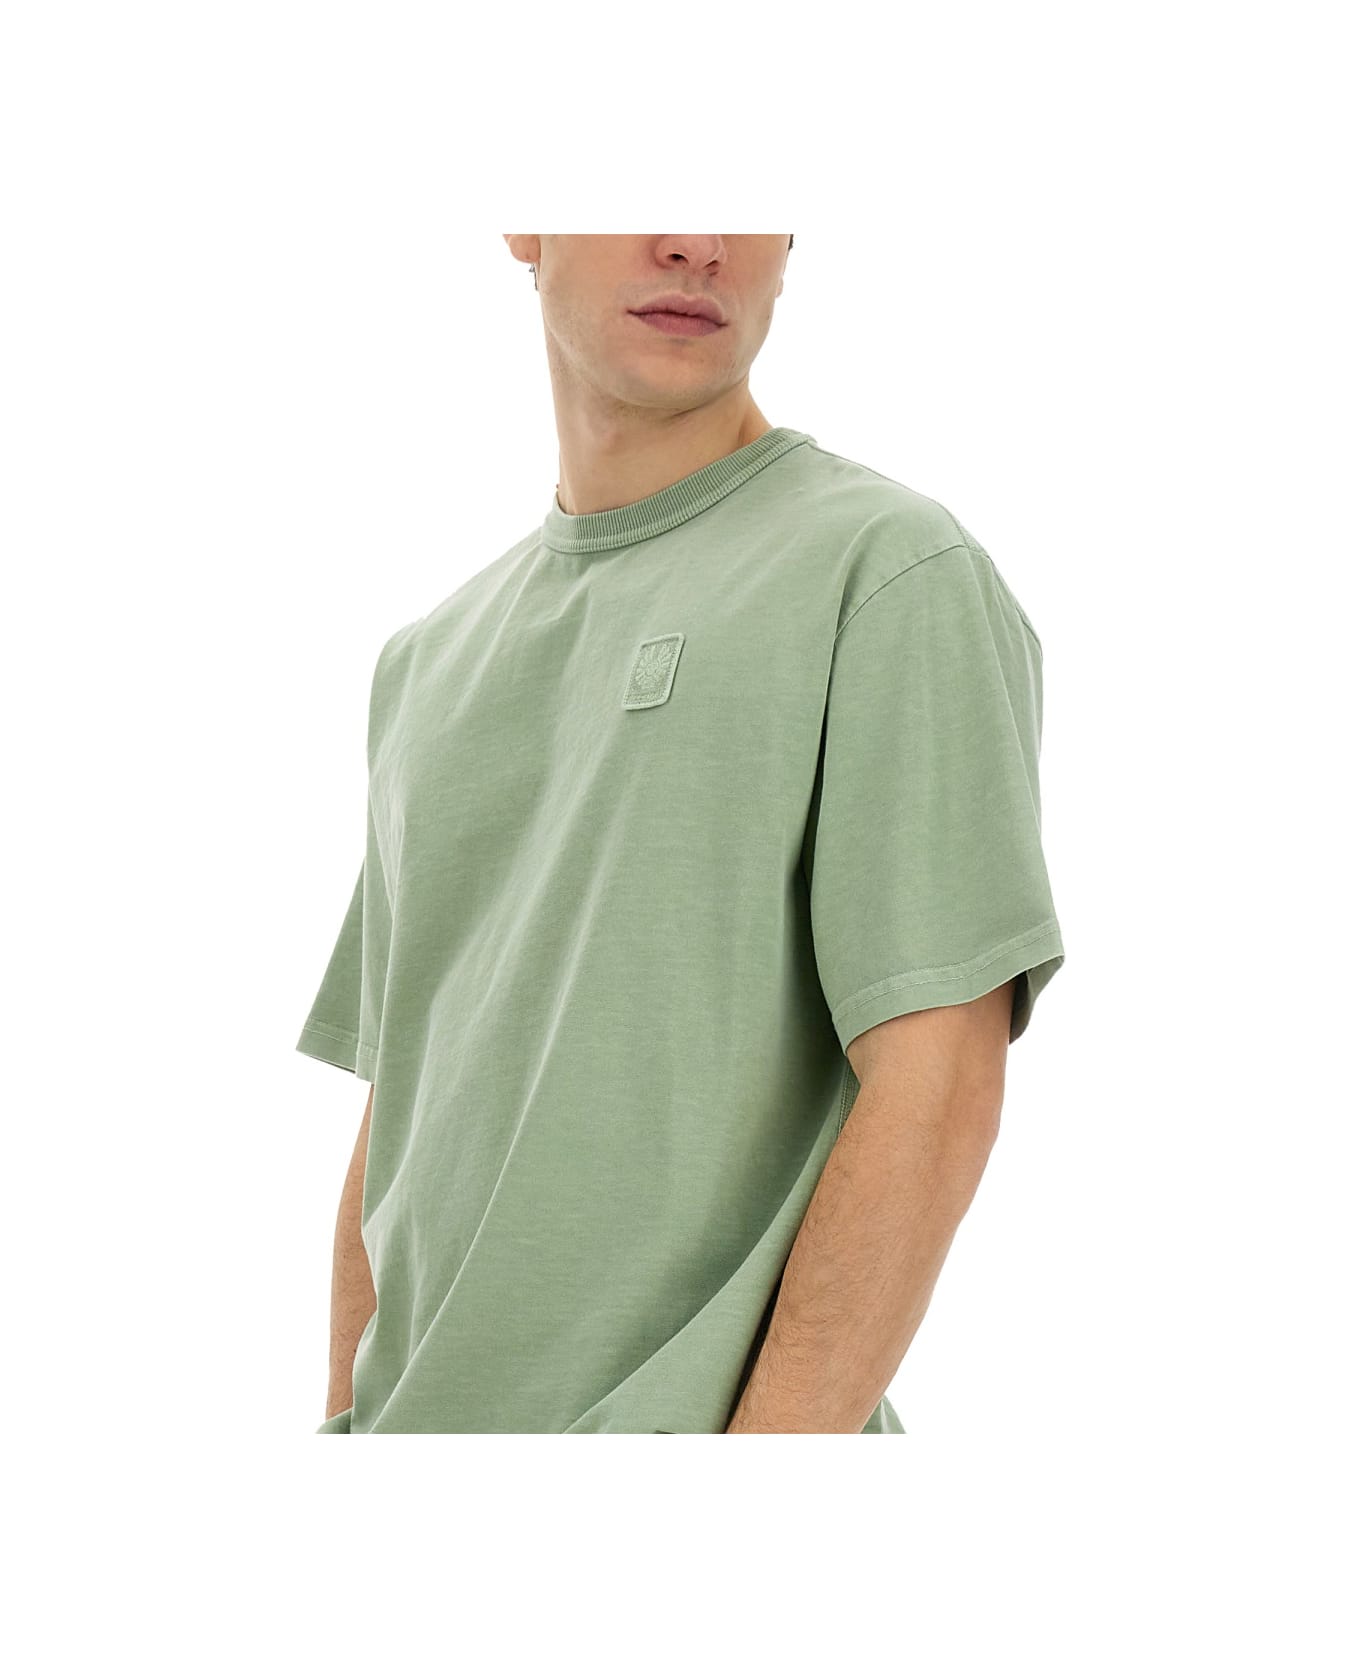 Belstaff T-shirt With Logo - GREEN シャツ